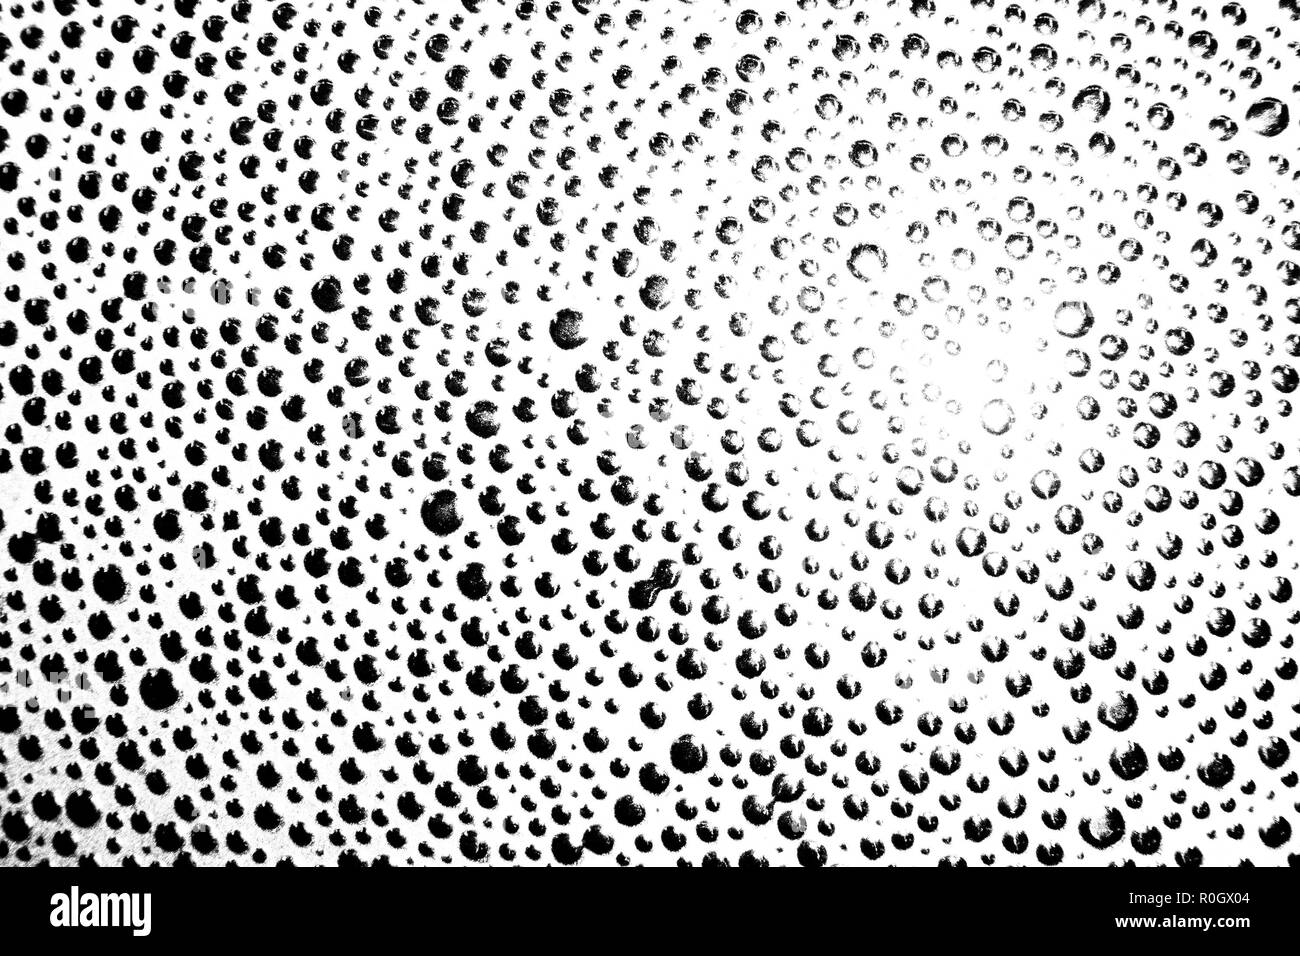 Grunge noir et blanc très tendance créative bouillonnait de fond ou la texture, désaturé l'image à contraste élevé Banque D'Images